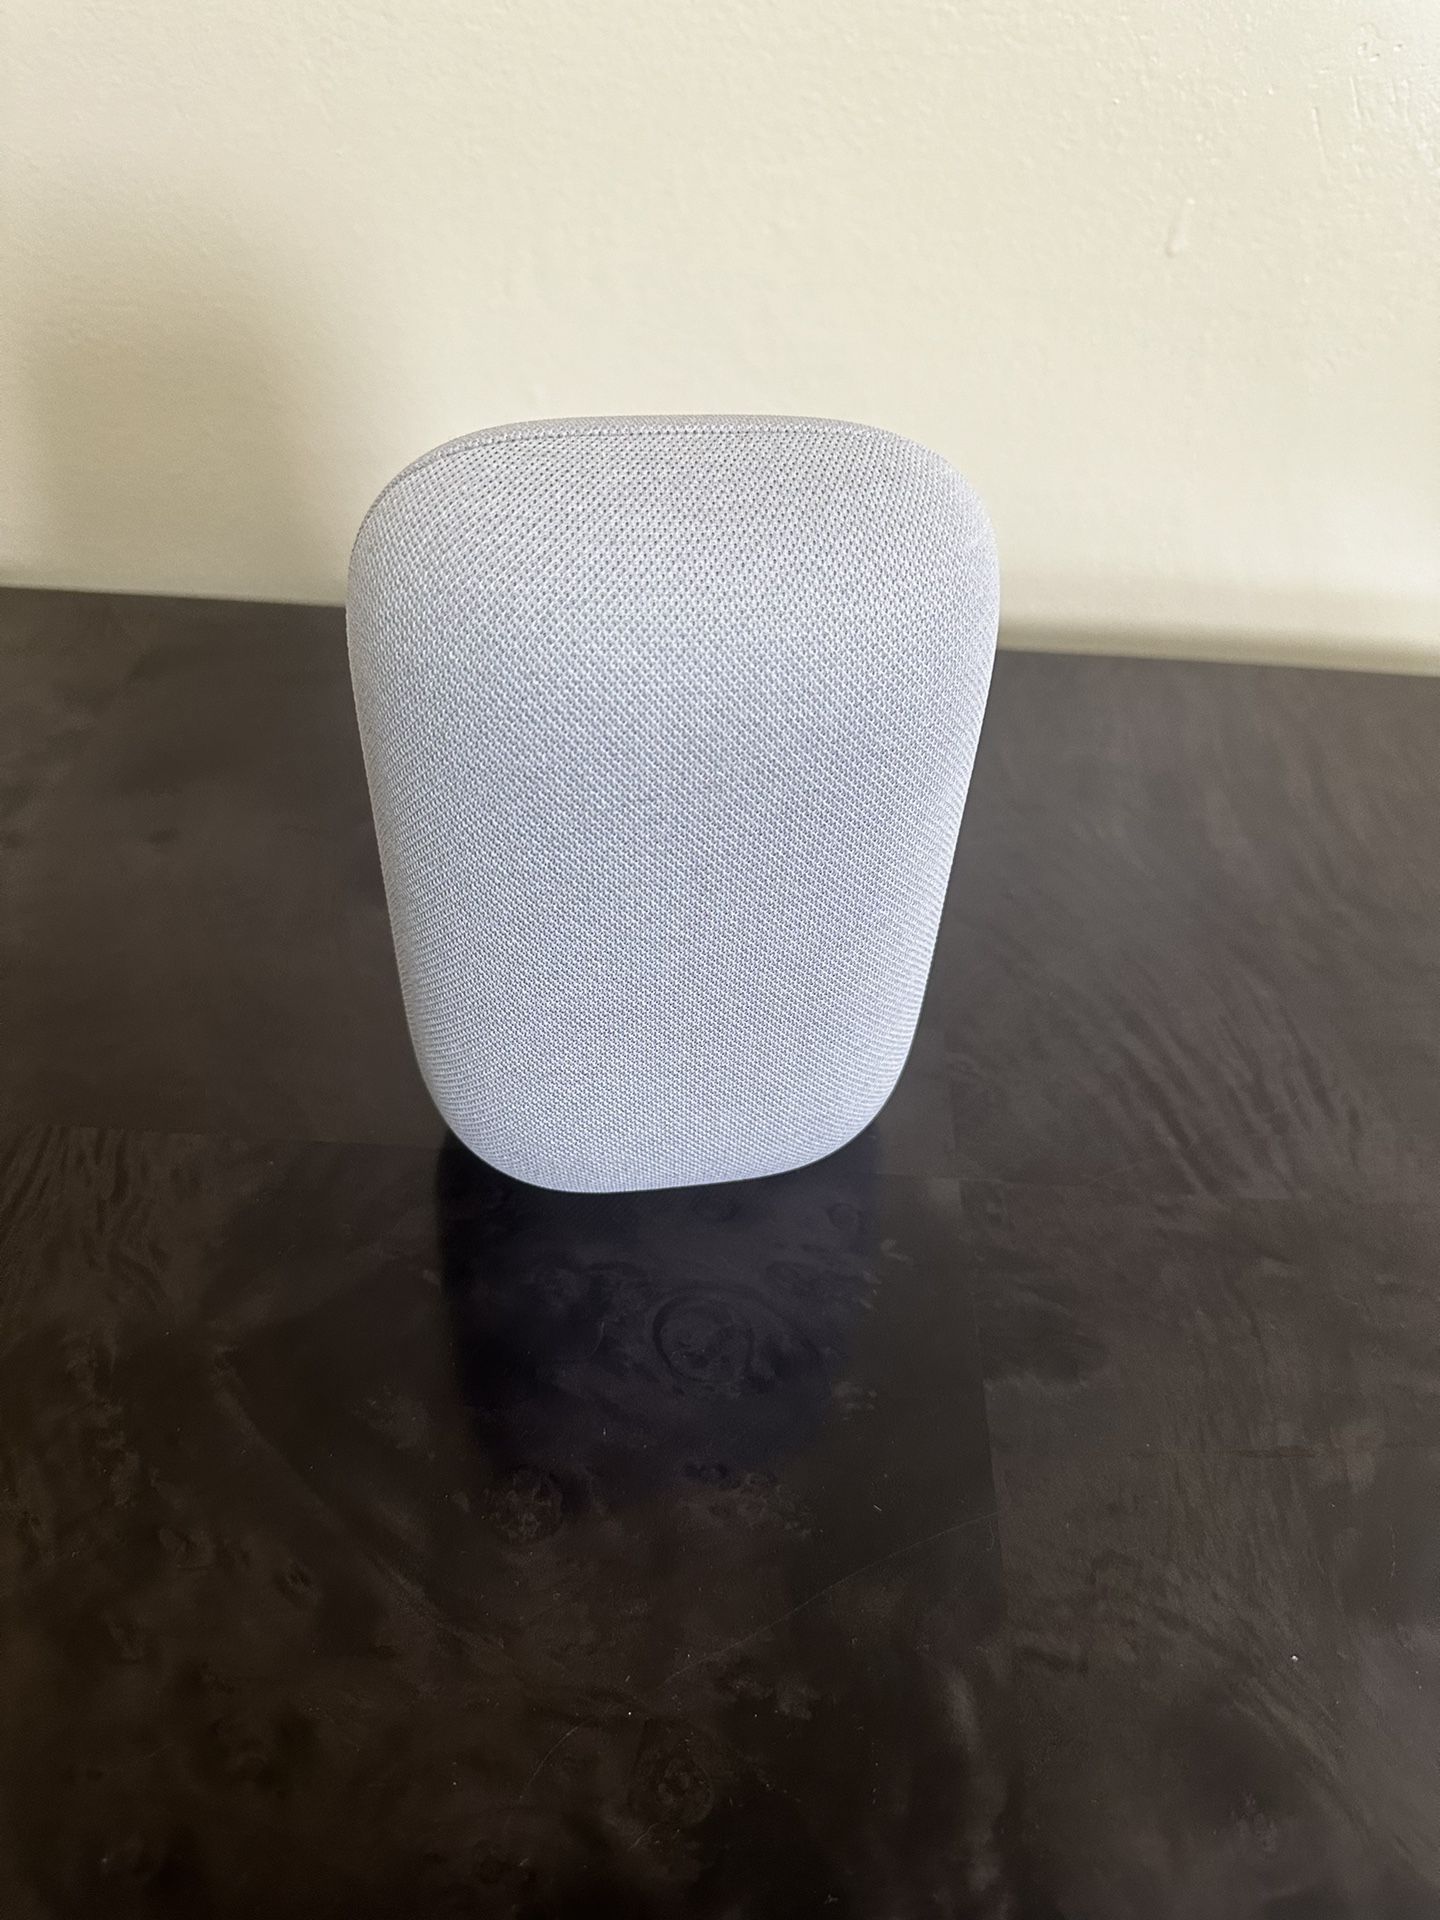 Google - Nest Audio - Smart Speaker -Chalk